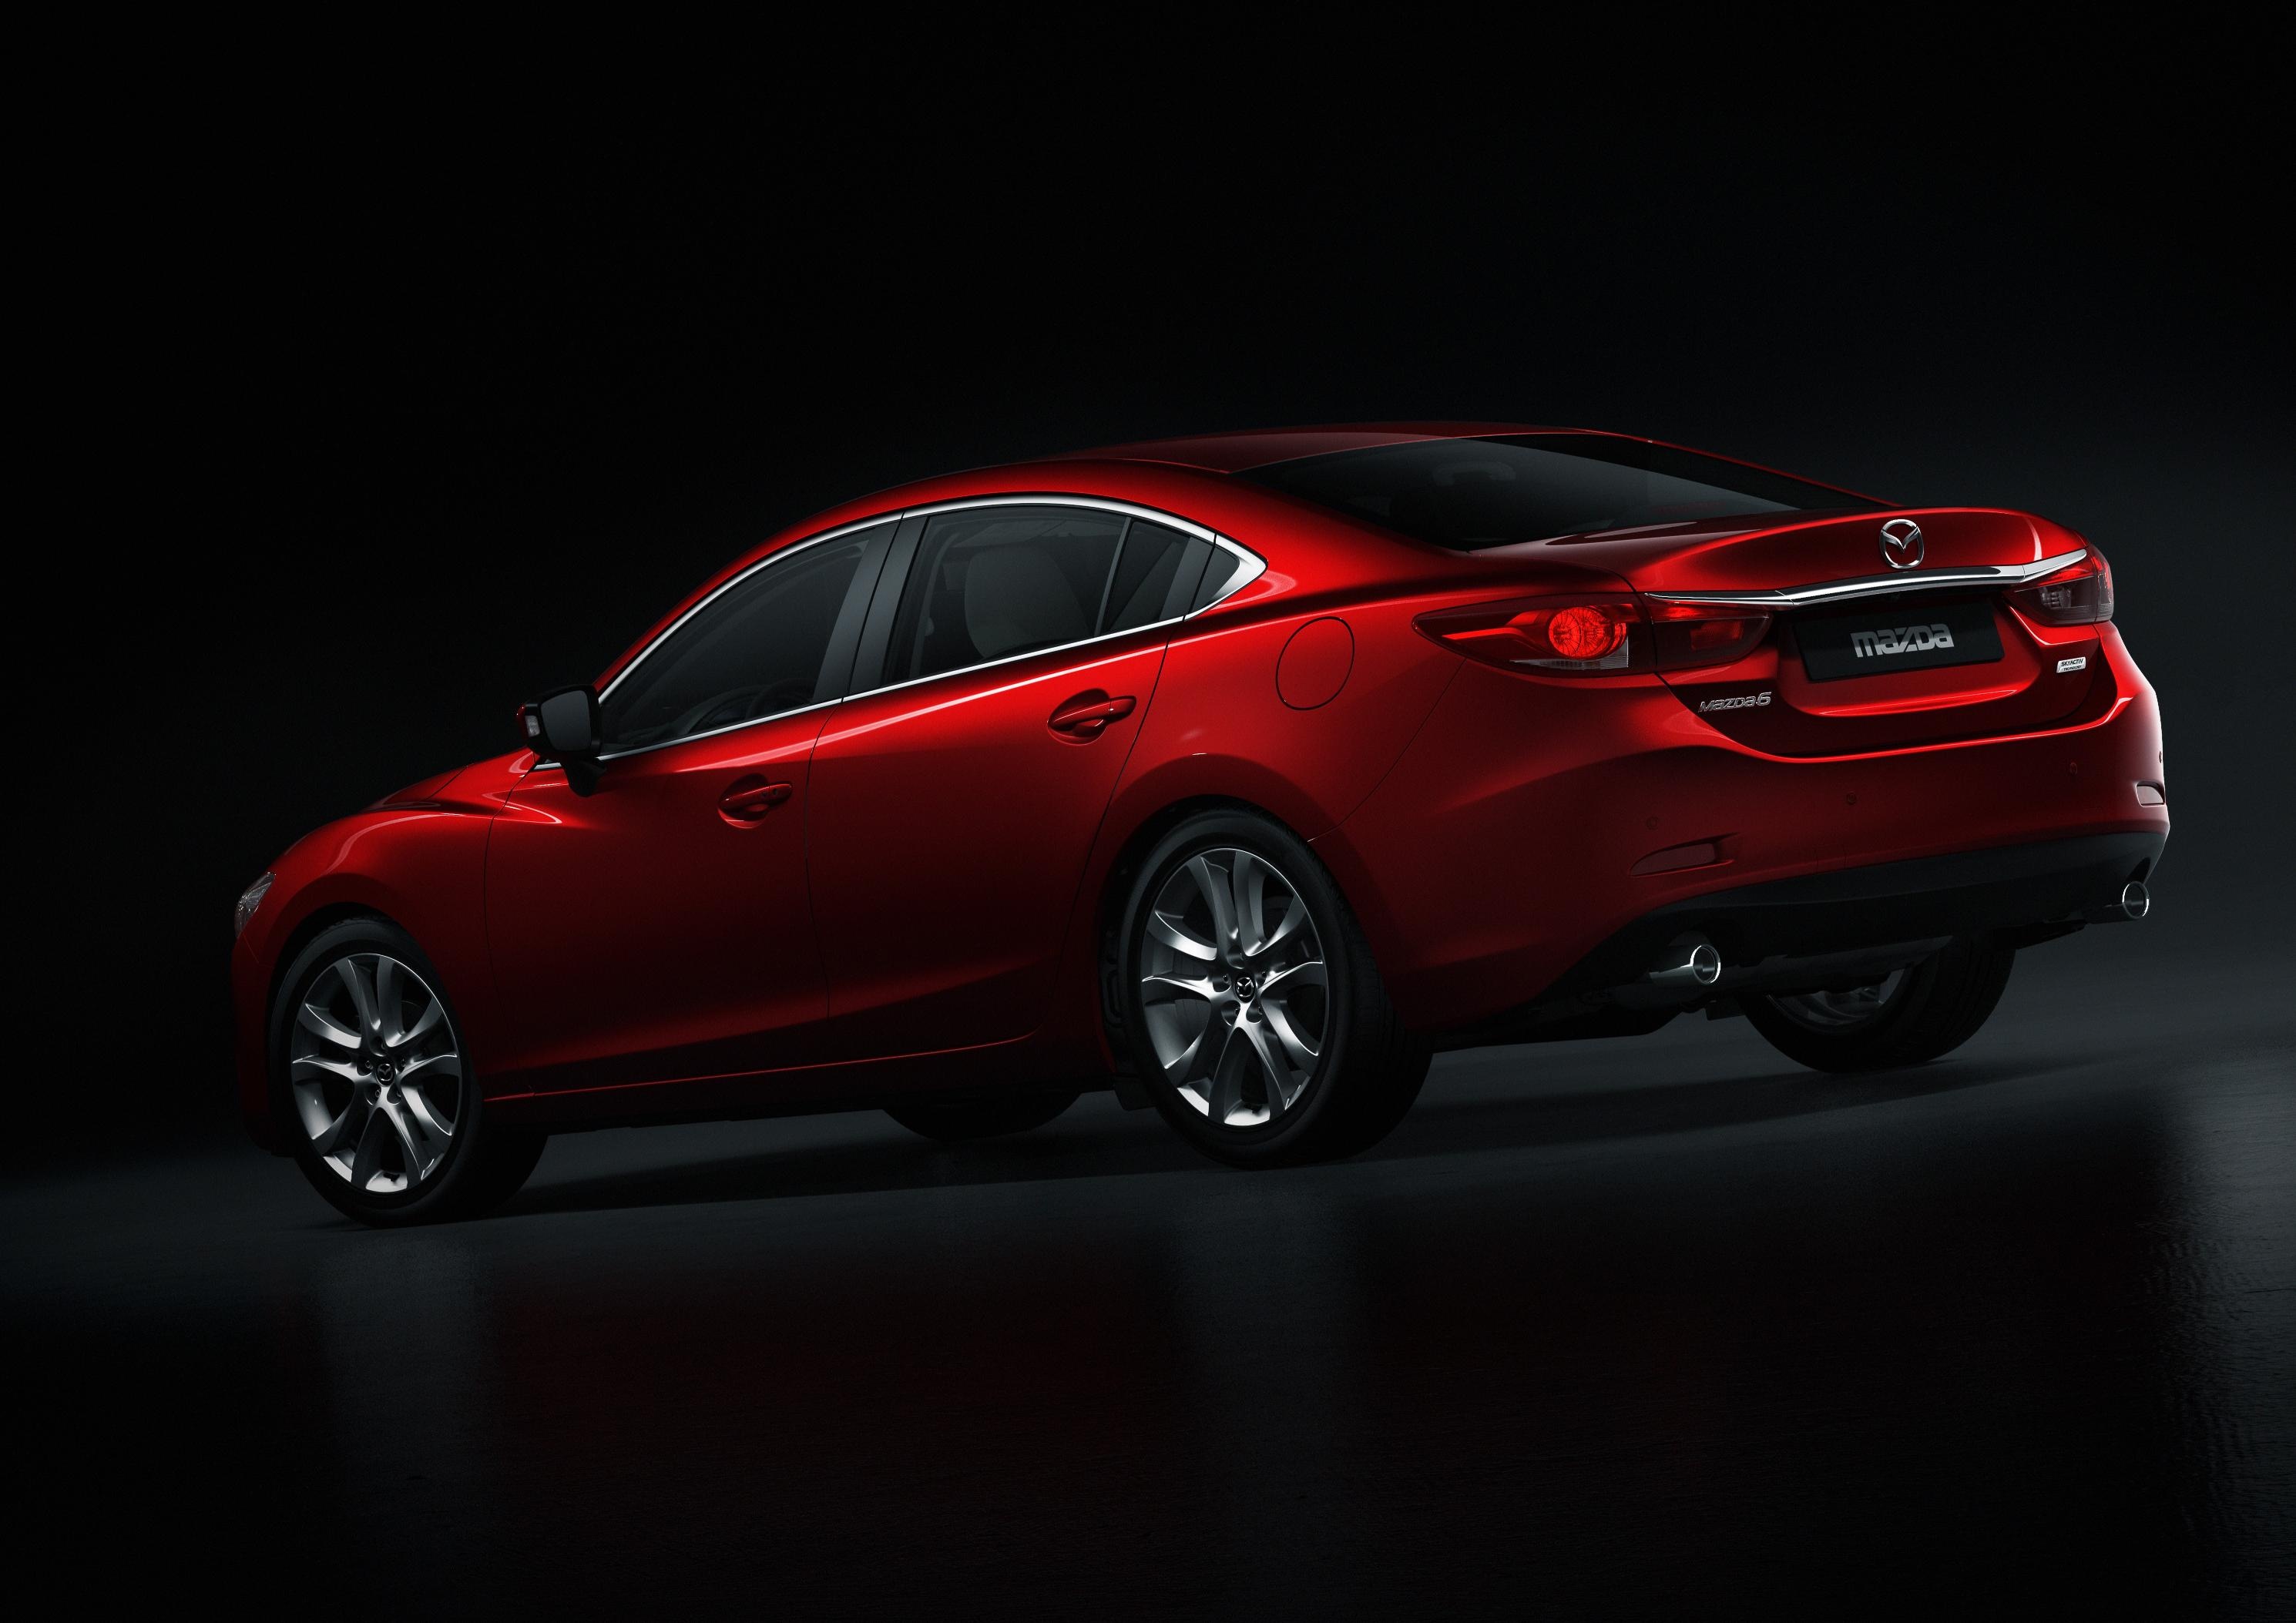 Mazda 6, Sedan beauty, HD picture, 2014 model, 2980x2110 HD Desktop